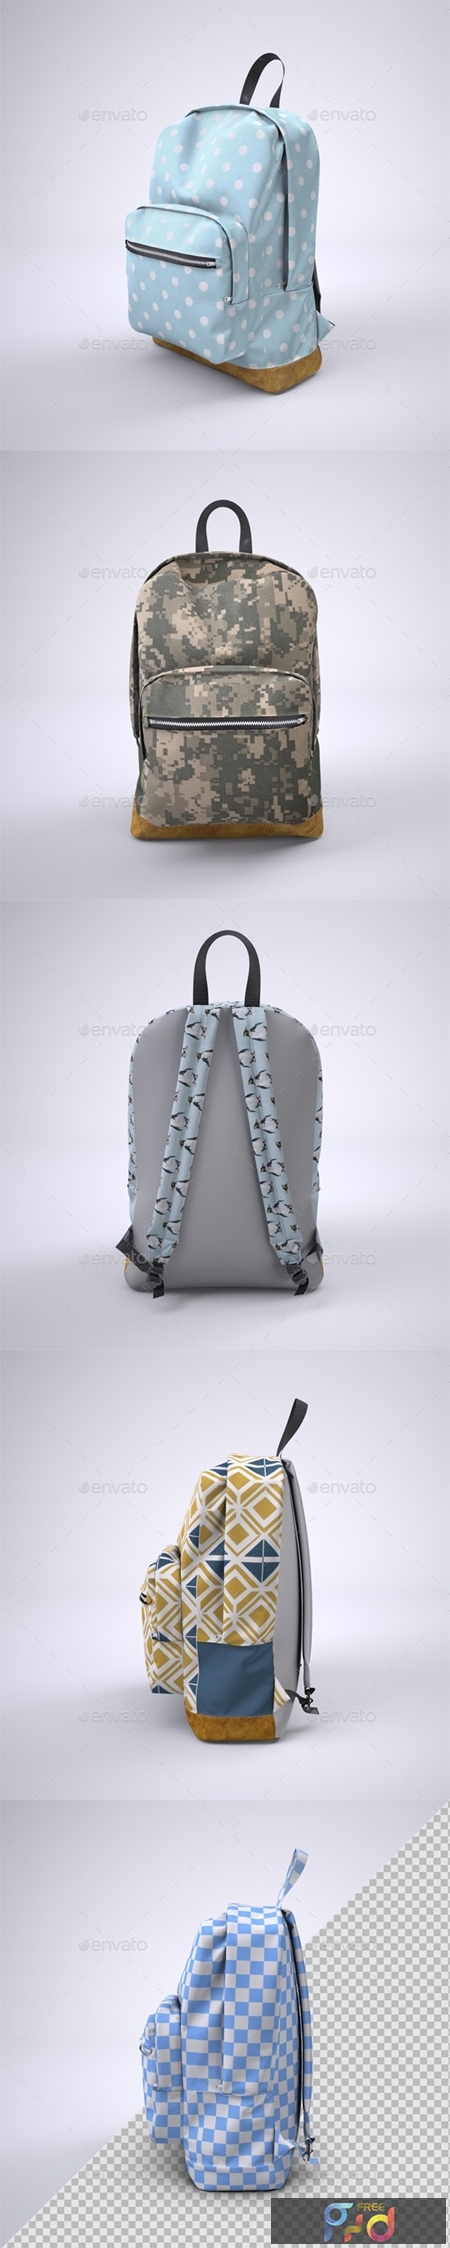 FreePsdVn.com 1908306 MOCKUP backpack rucksack mock up 20182458